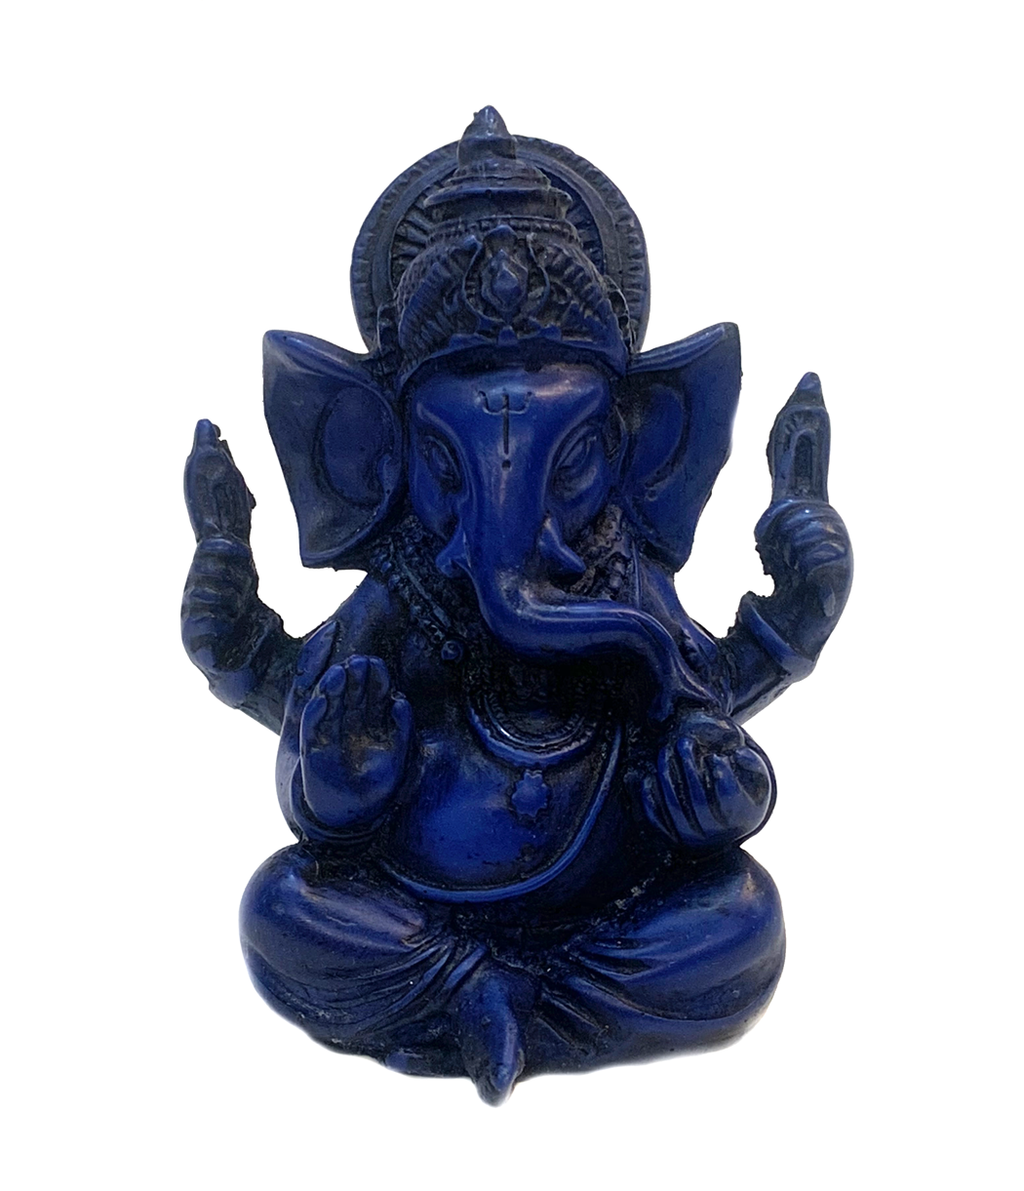 Handmade Royal Blue Raisin Ganesha Statue